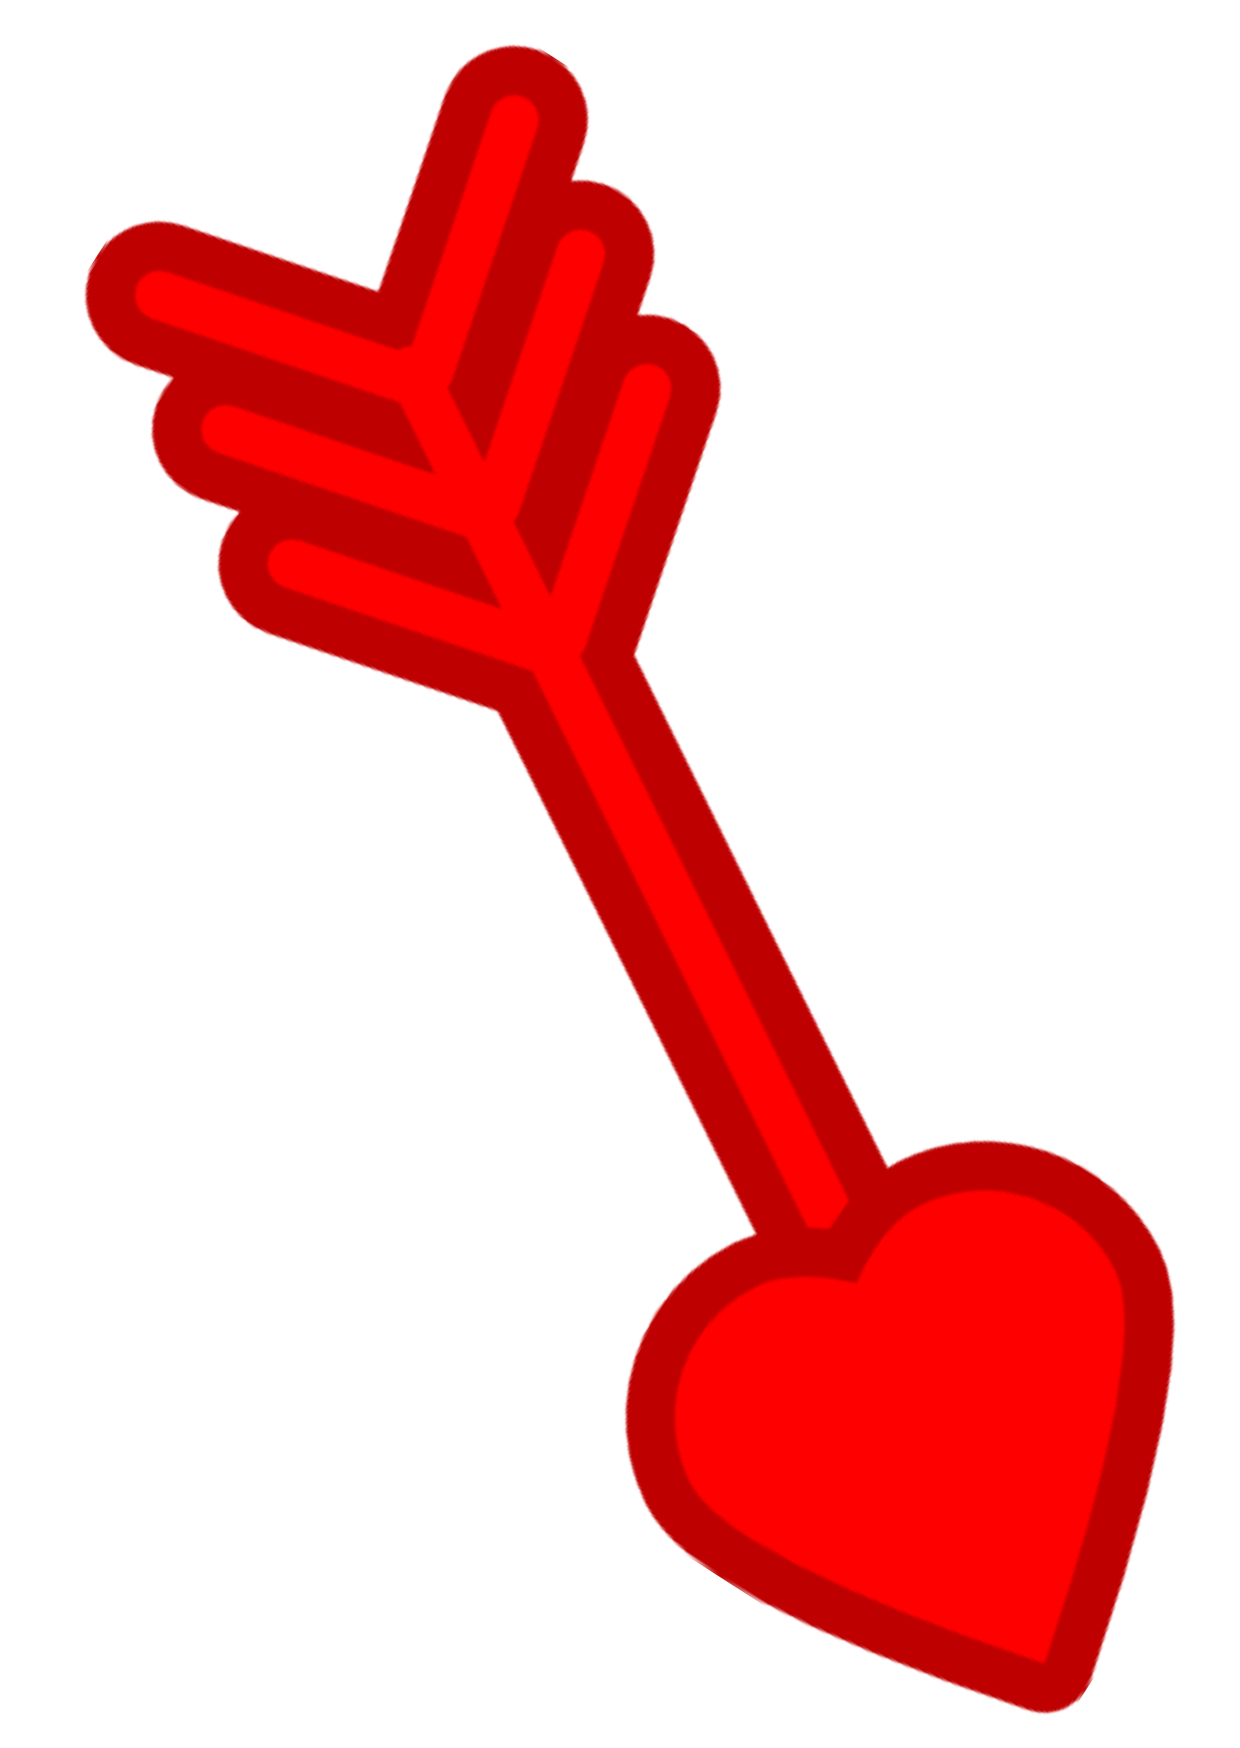 clip art heart with an arrow - photo #21